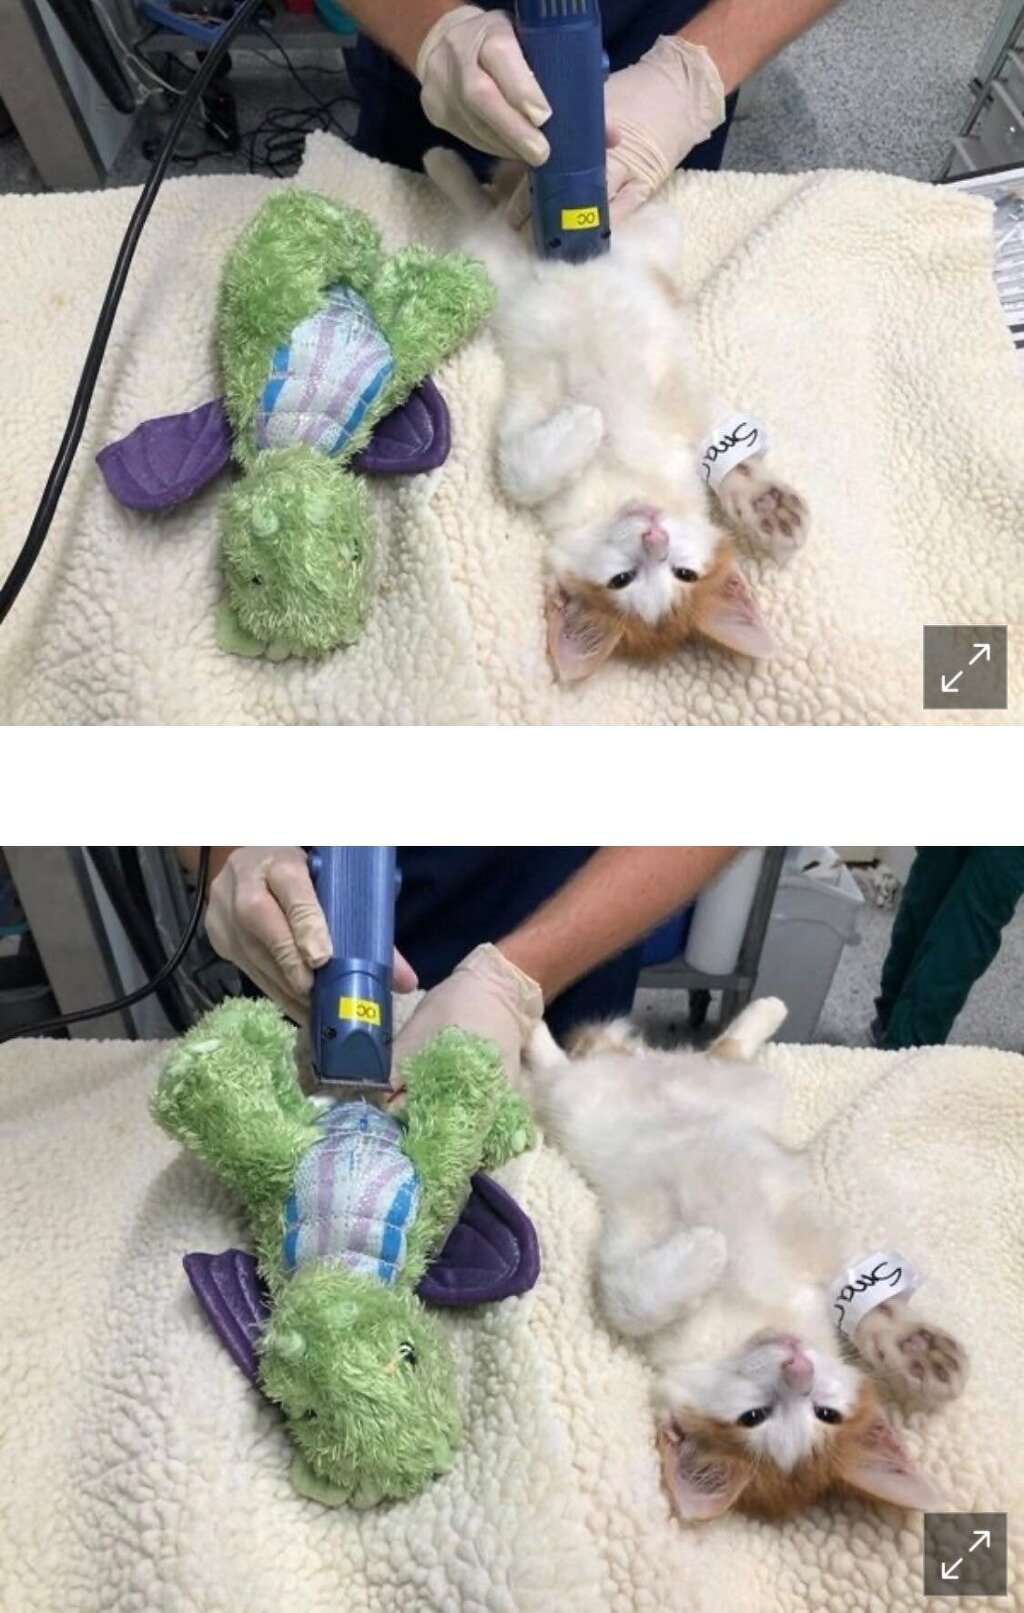  중성화 수술 무서워하는 고양이